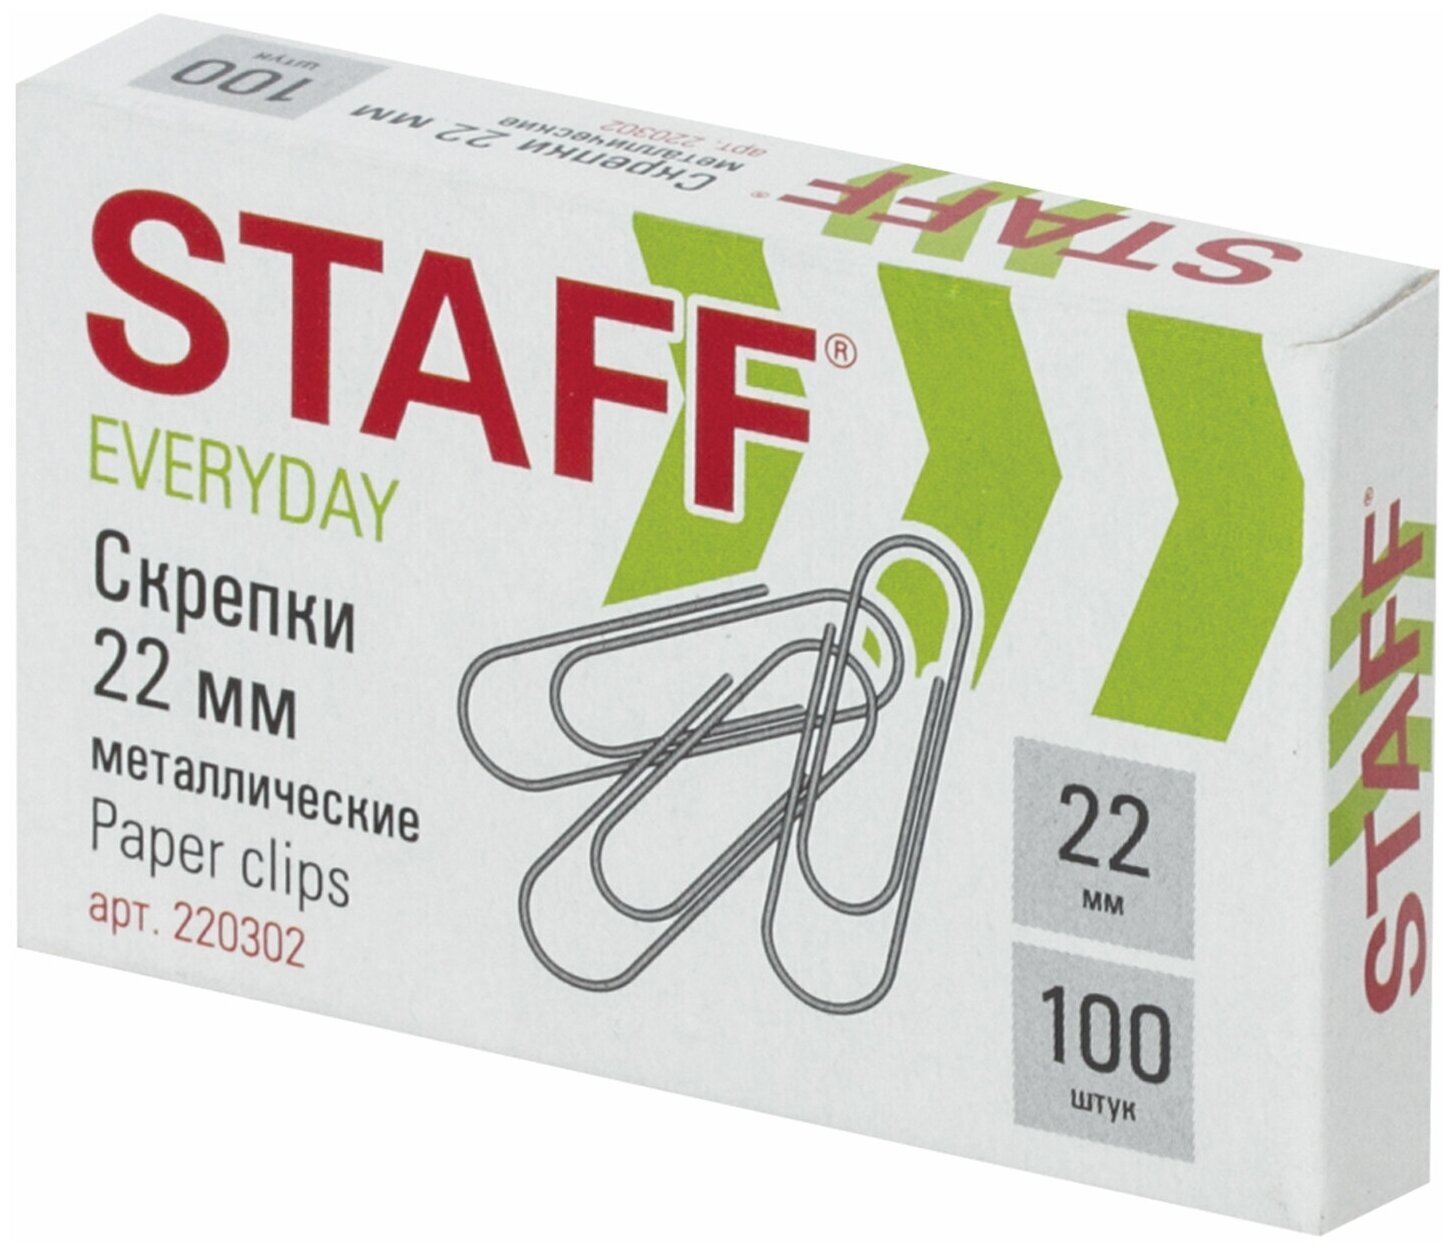 Скрепки STAFF EVERYDAY, 22 мм, металлические, 100 шт, в картонной коробке, россия, 220302